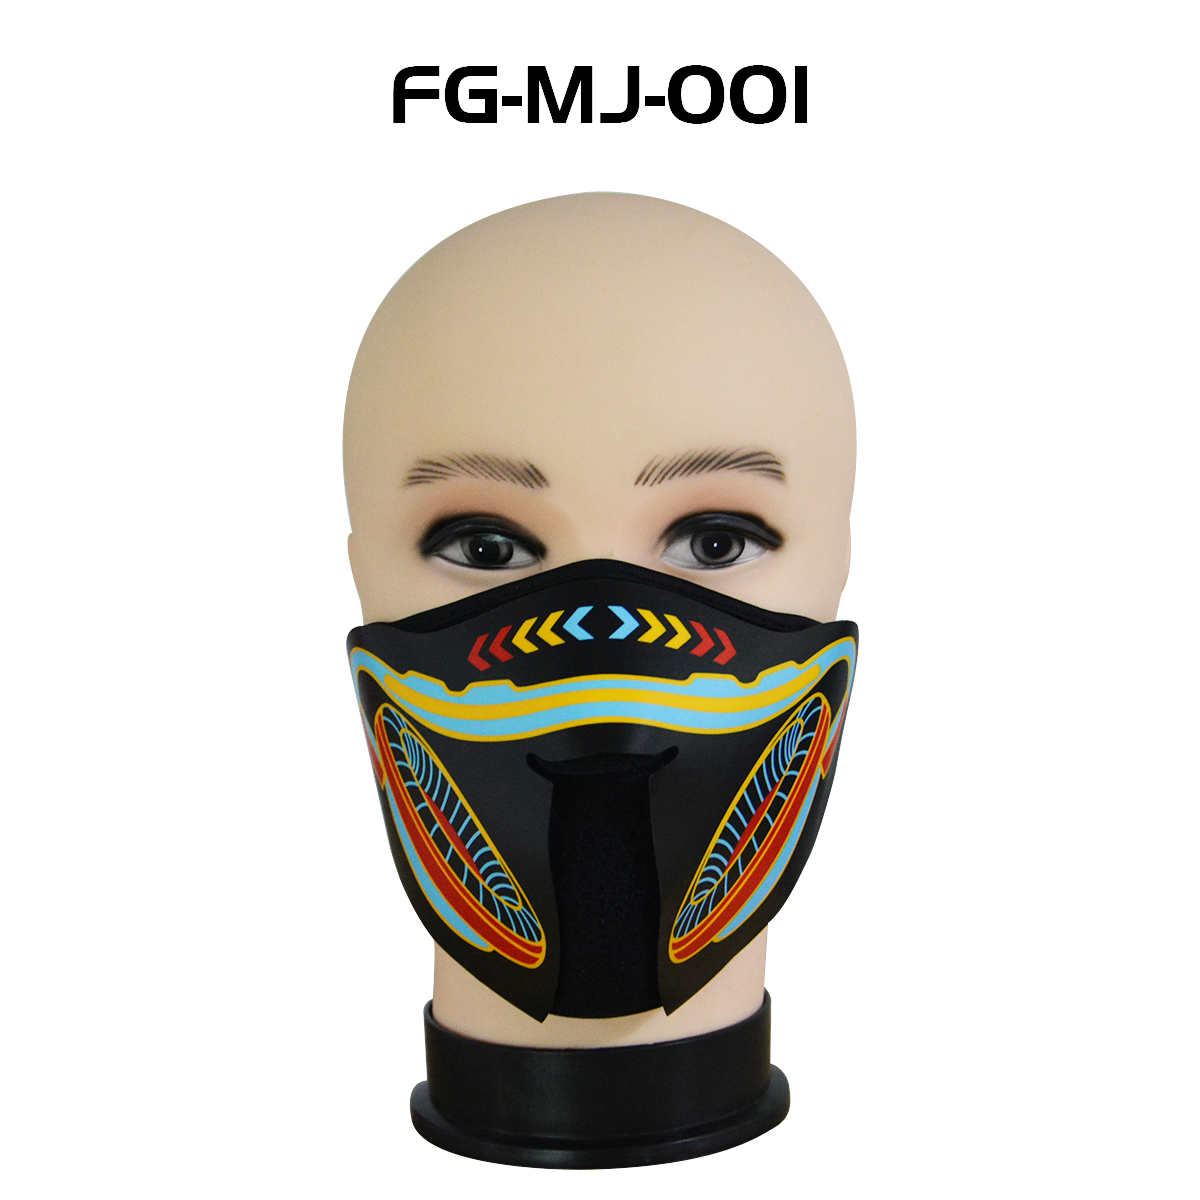 FG-MJ-001